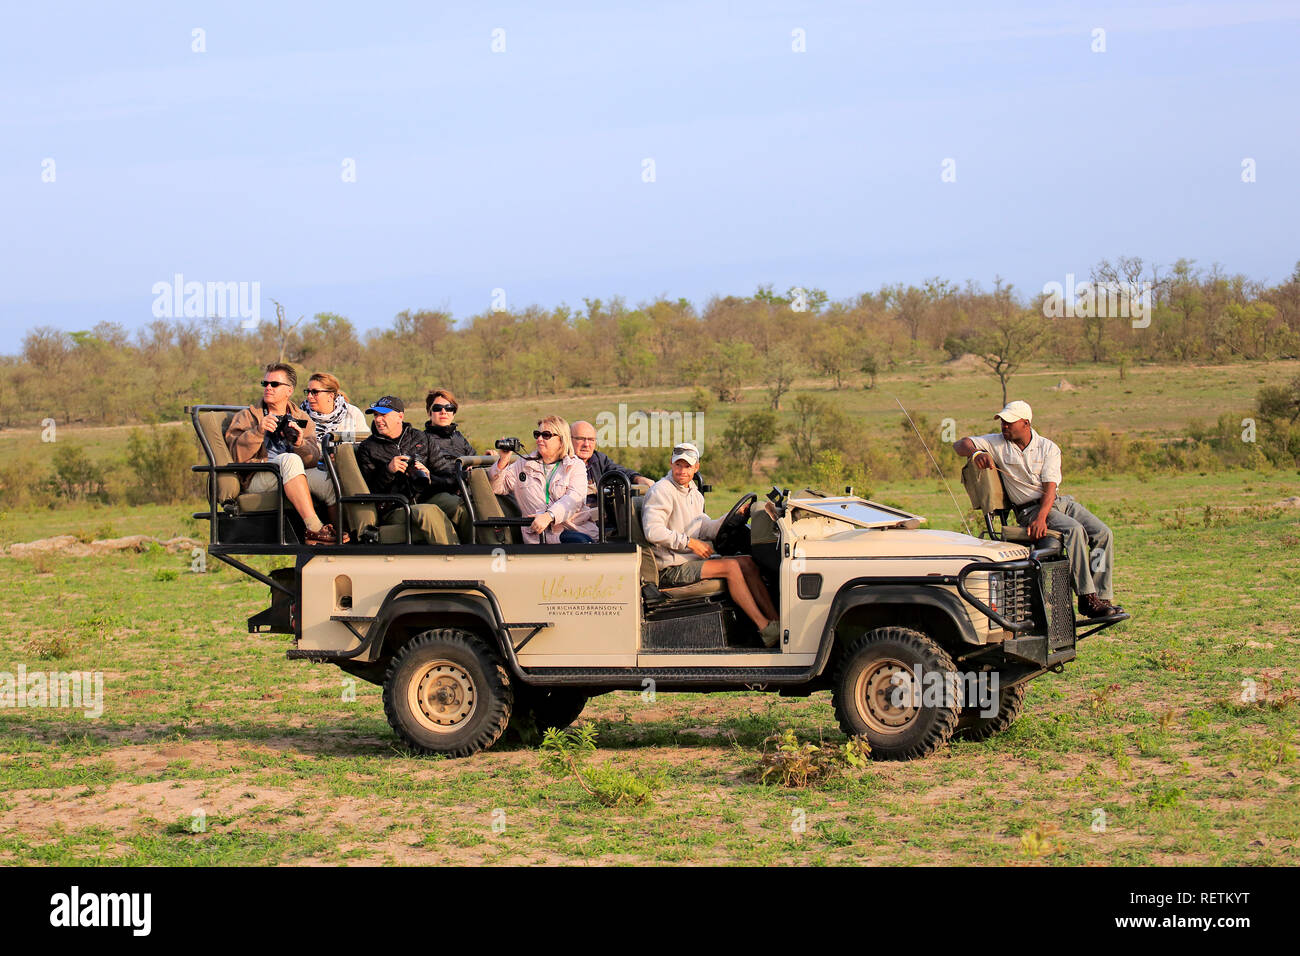 Véhicule Safari, Safari privé avec les touristes en Safari véhicule, Sabi Sand Game Reserve, parc national Kruger, Afrique du Sud, l'Afrique Banque D'Images